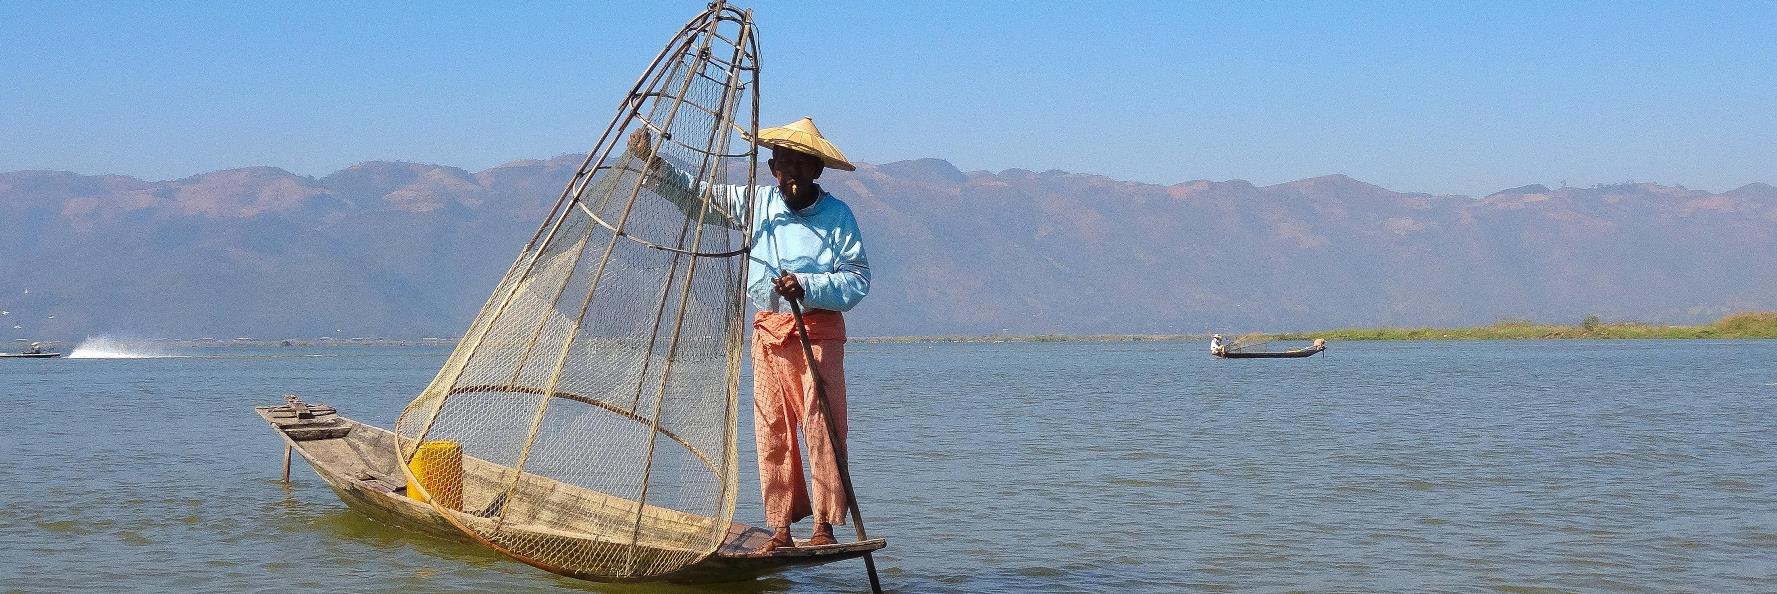 lake inle fisherman